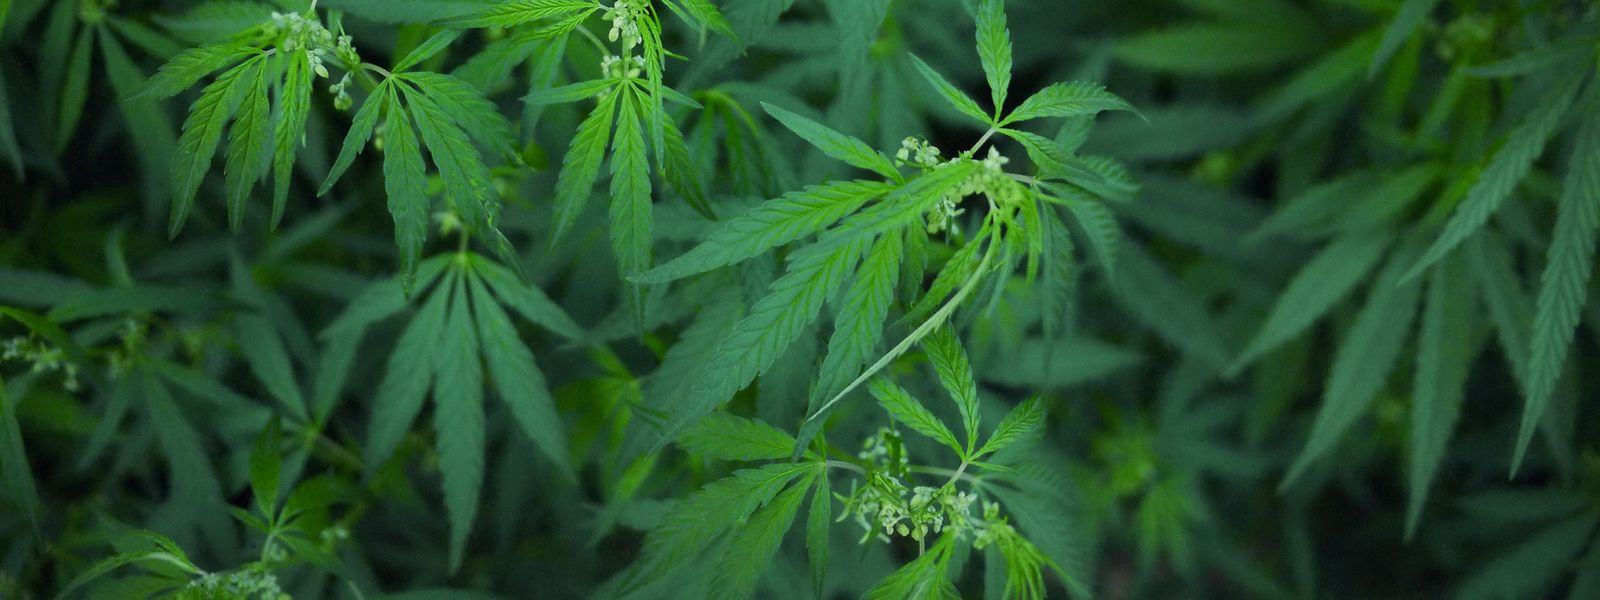 Fin juin, 270 patients suivaient un traitement au cannabis médicinal au Luxembourg.